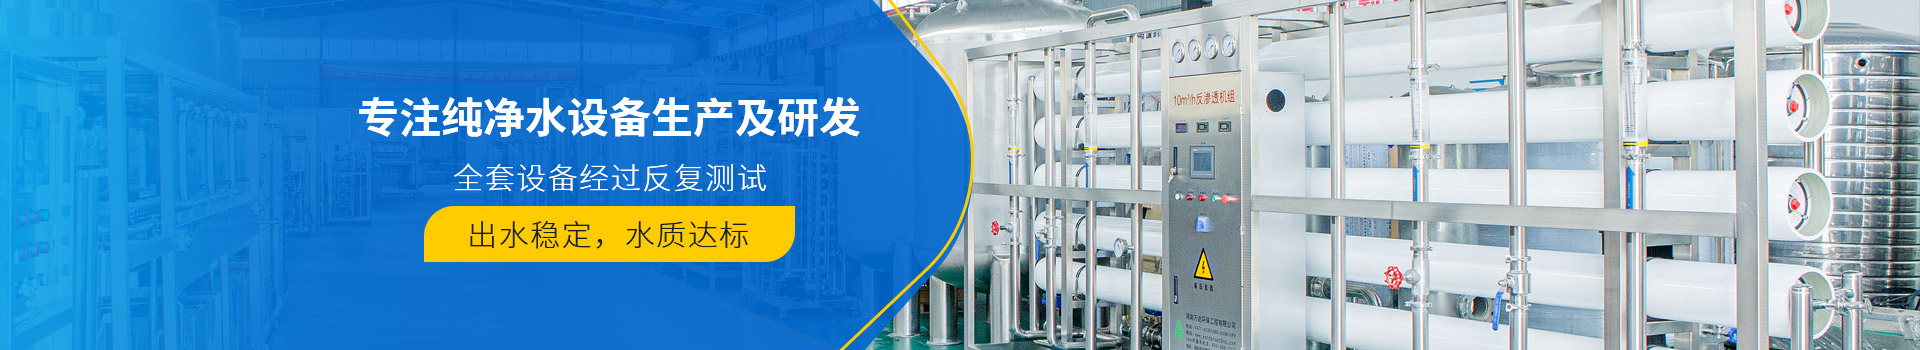 武汉川谷环保科技有限公司纯水设备产品展示-武汉纯水设备厂家 (PC+WAP)-纯净水设备生产销售